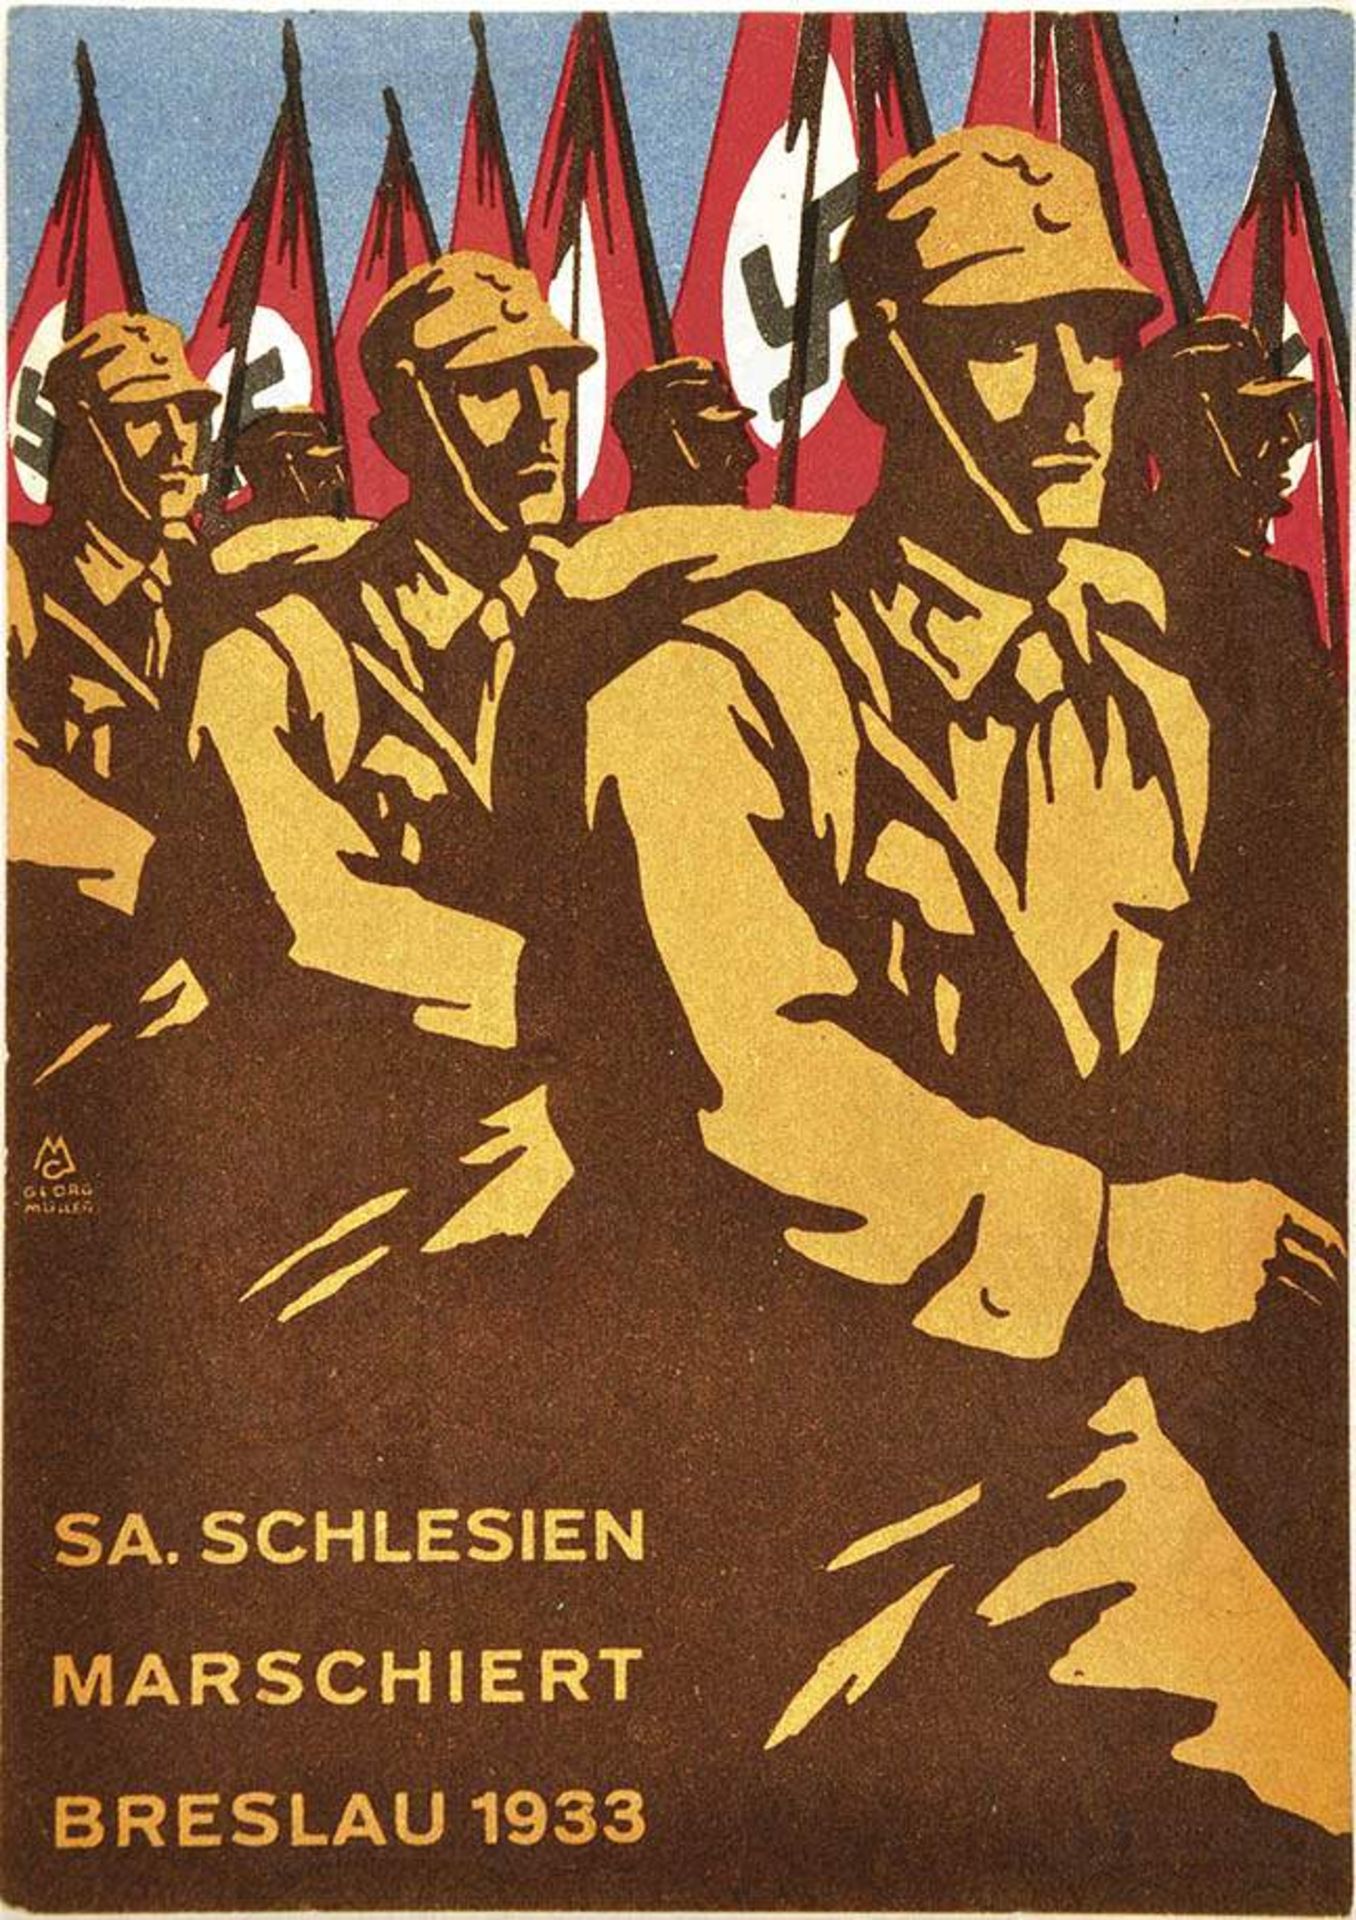 SA. SCHLESIEN MARSCHIERT "Breslau 7./8. Oktober 1933", farb. Druck, Künstlersign. Georg Müller, gel.